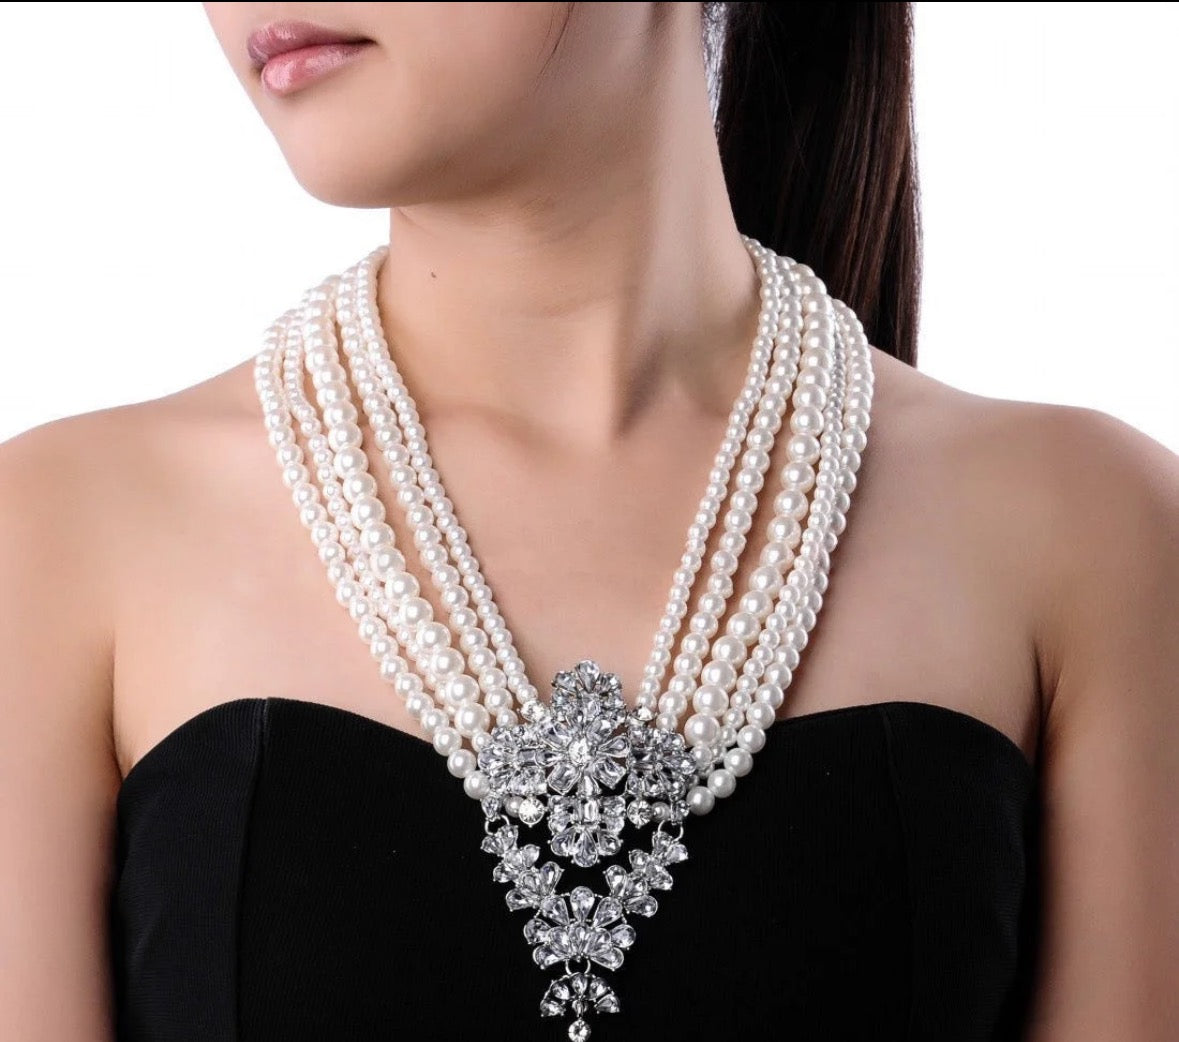 Big pearl drop necklace with rhinestones